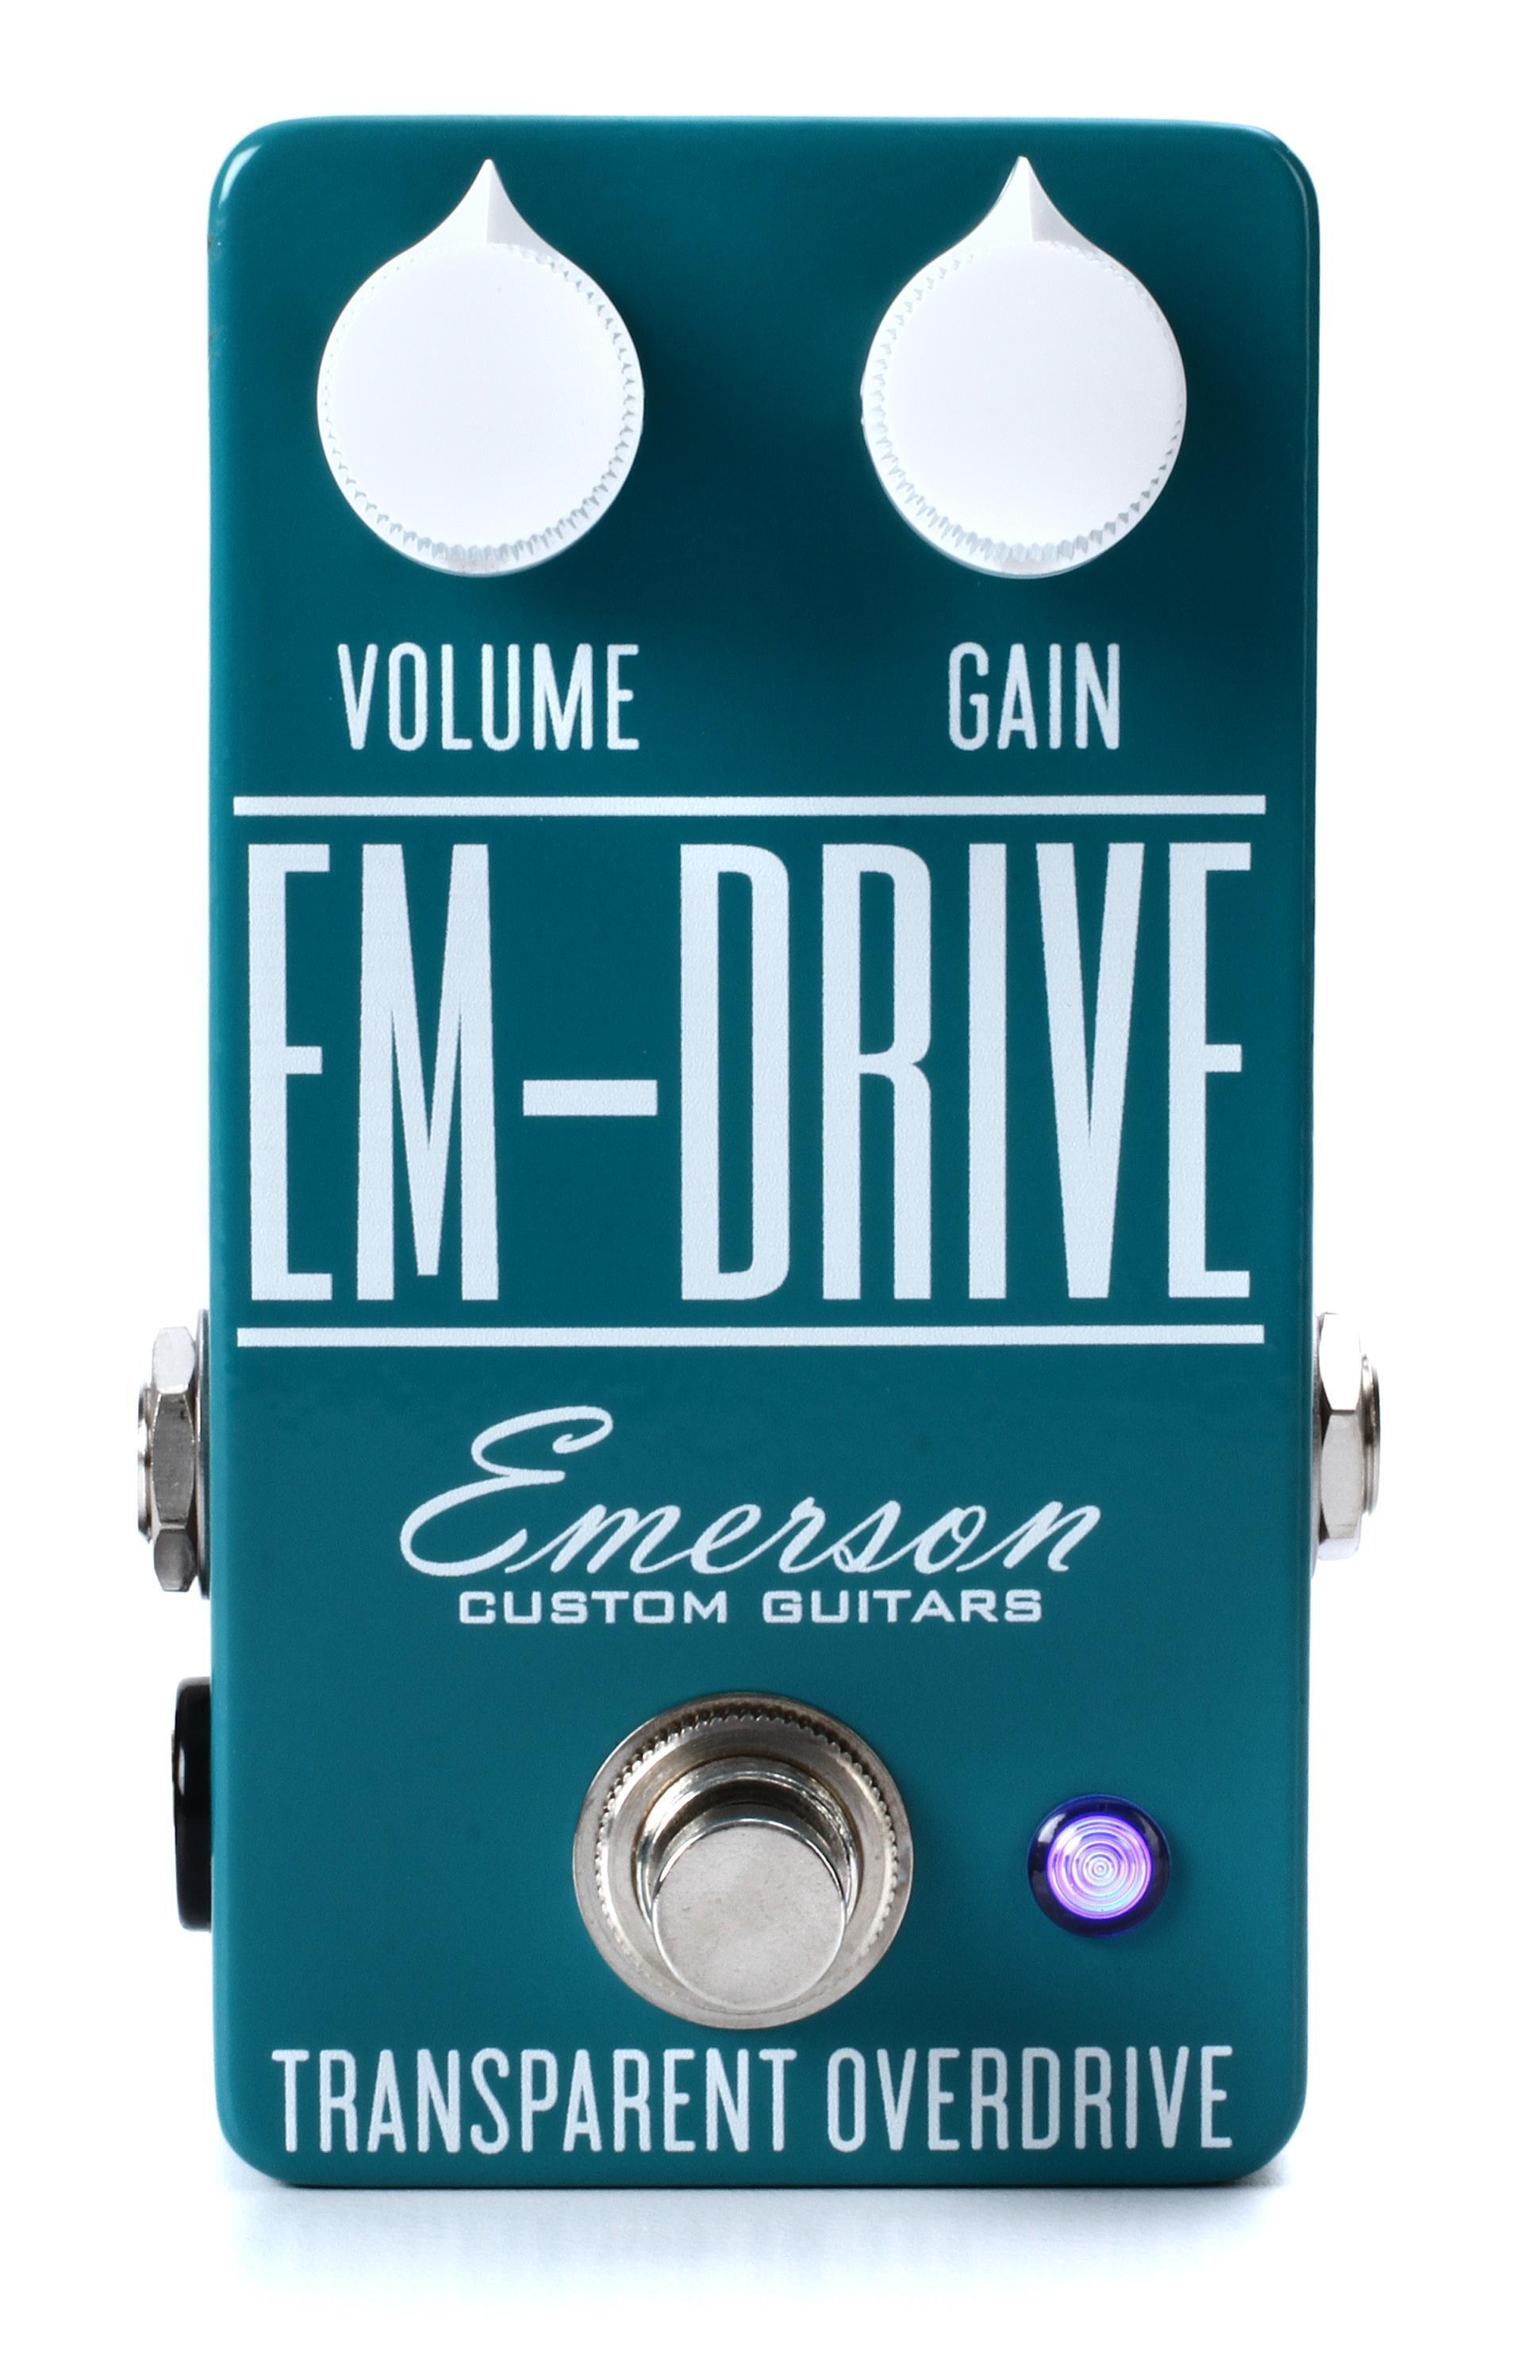 限定SALE新作登場[良品] Emerson Cutom Guitars EM-DRIVE 自身のサウンドを的確に底上げしてくれる1台/入力に対するレスポンスも秀逸 [MI590] オーバードライブ